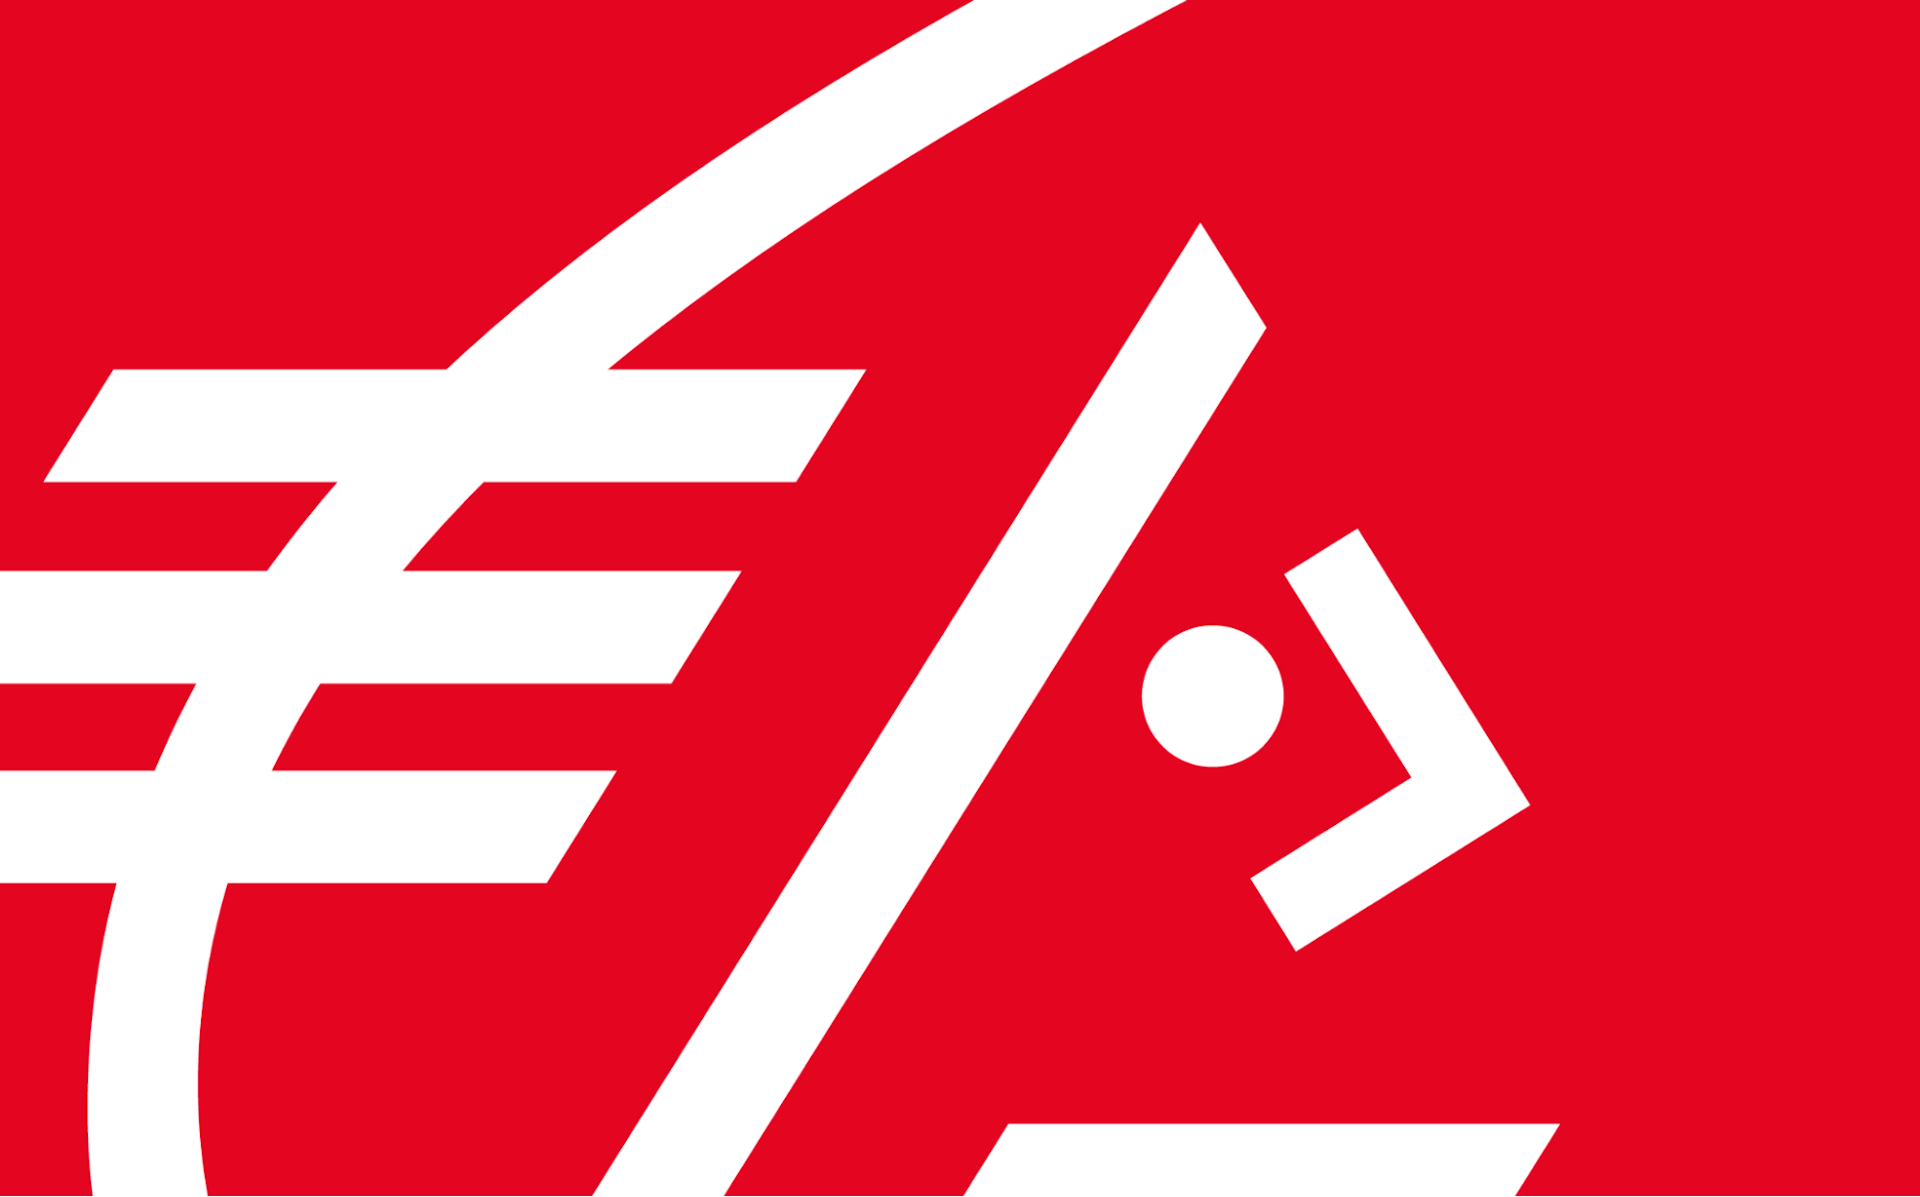 Le logo de la Caisse d'Épargne.